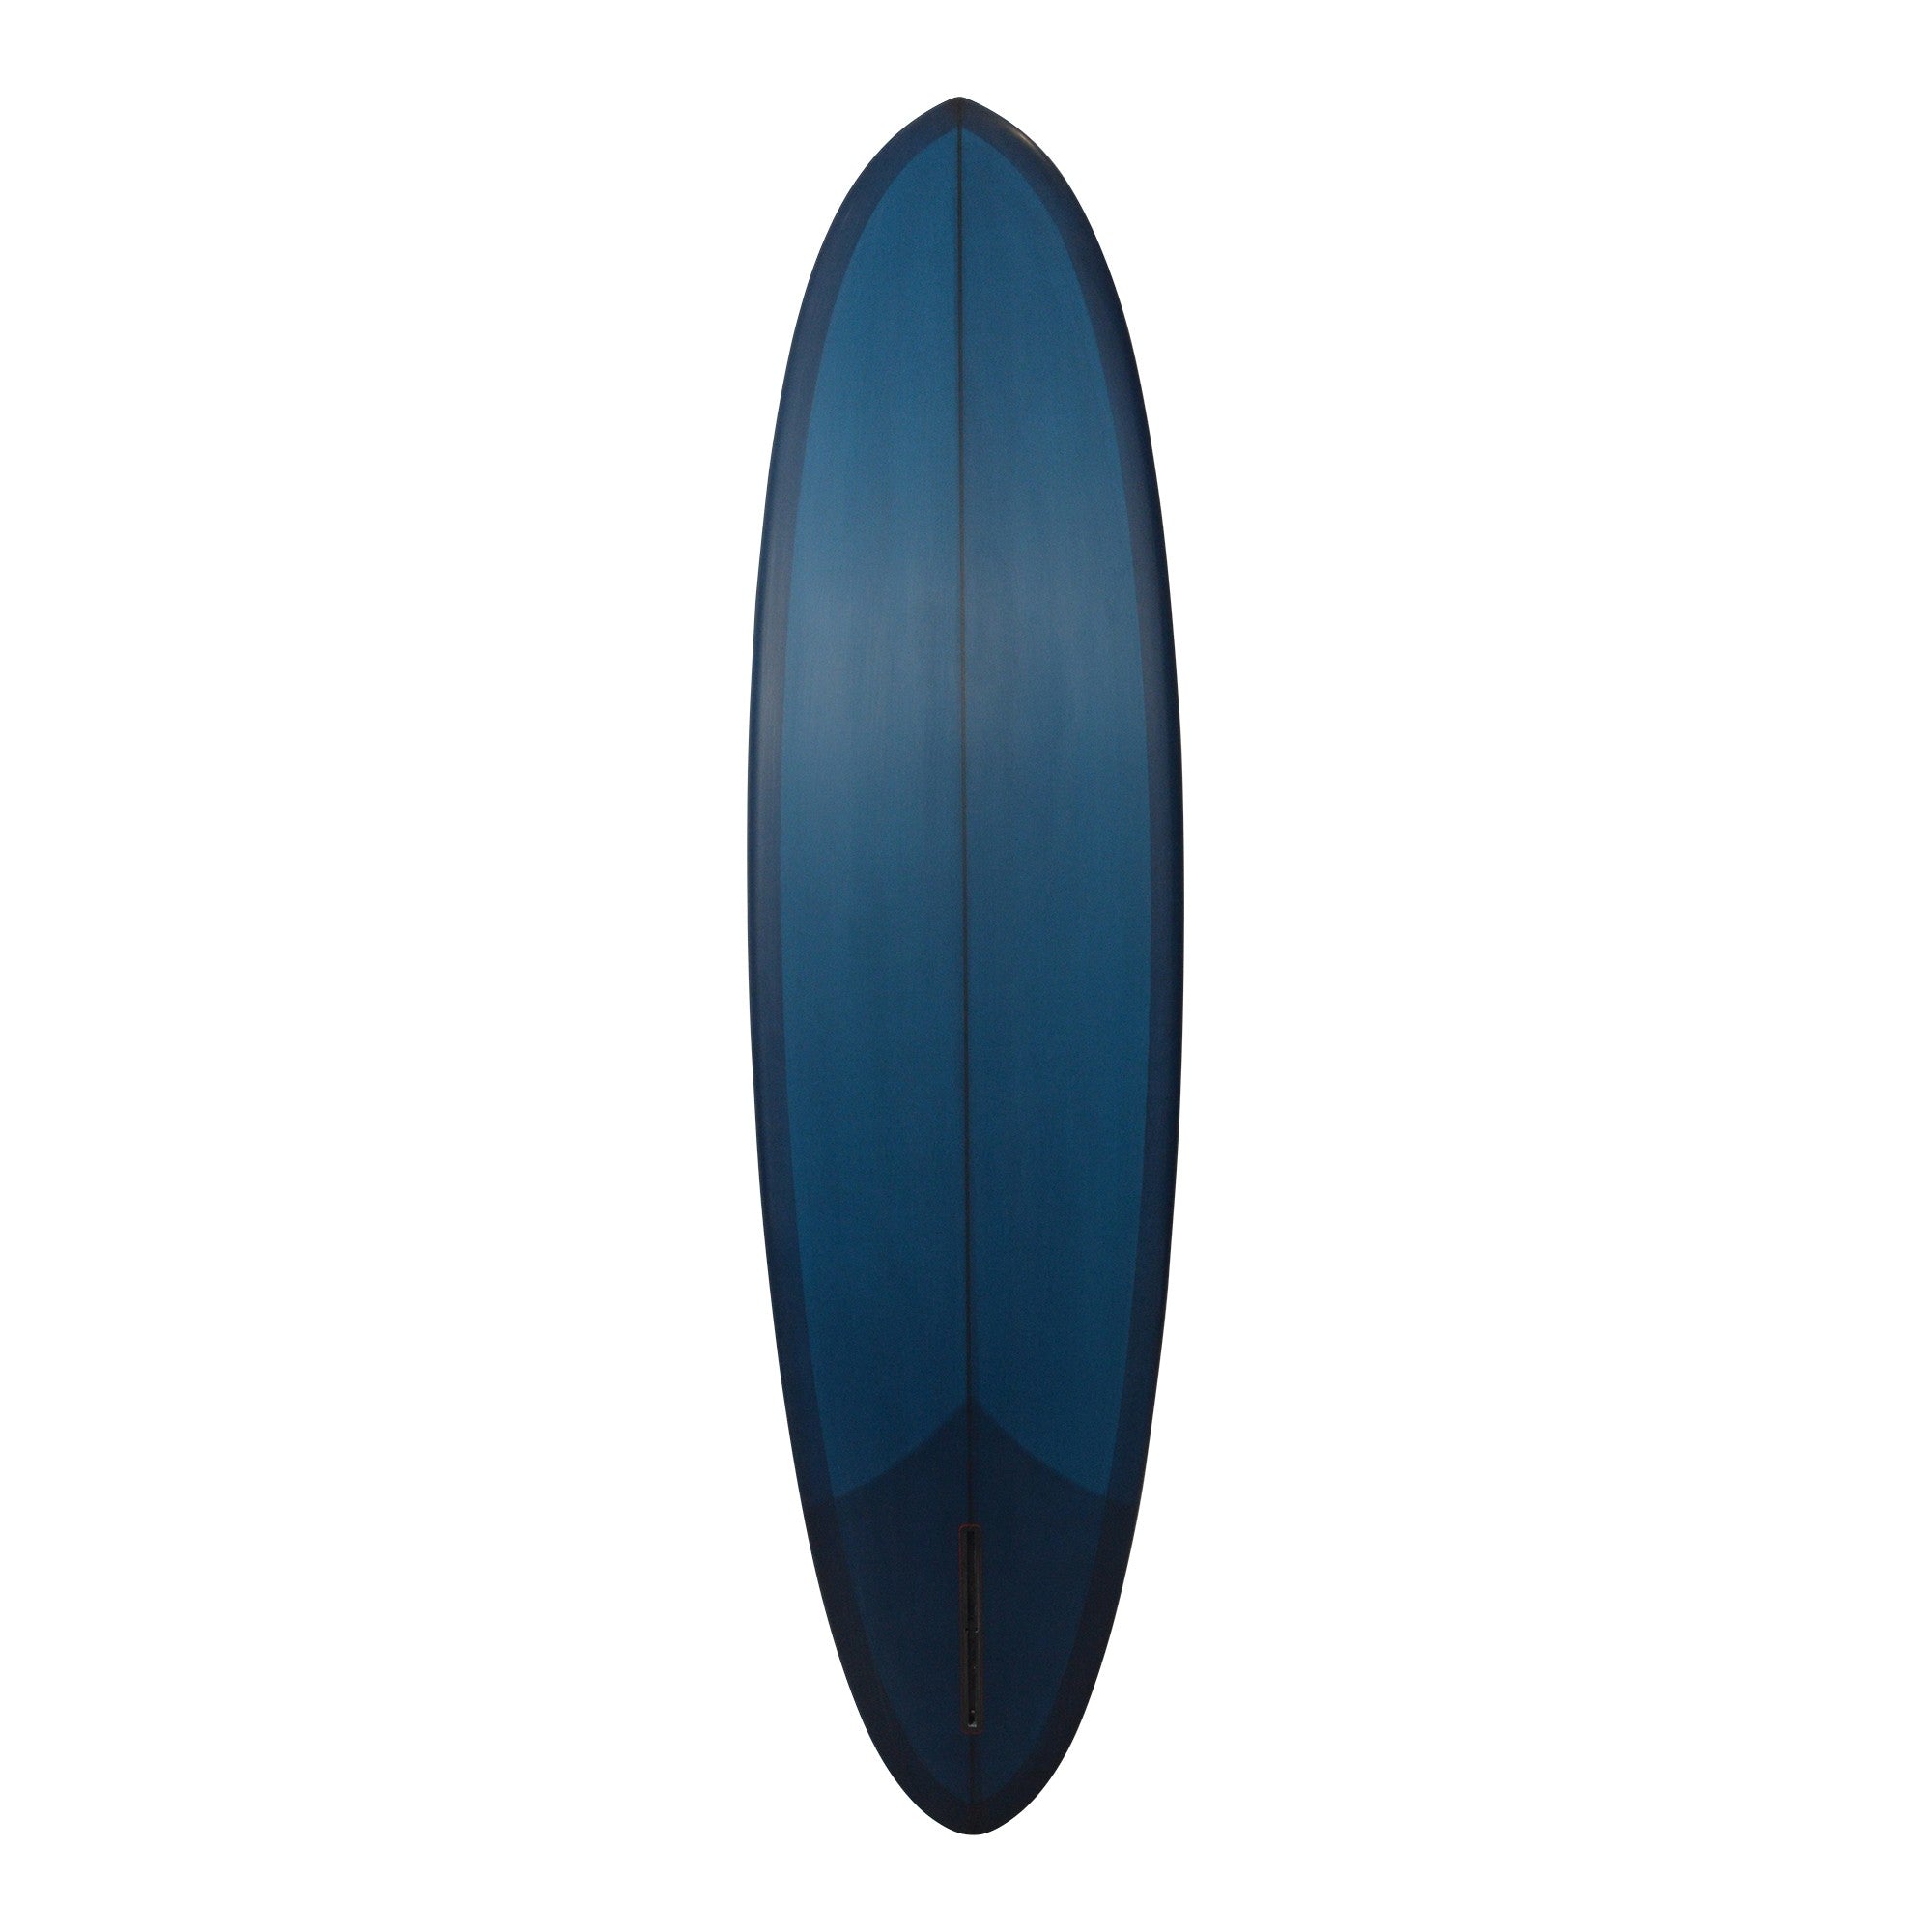 Tablas de surf ELMORE - Eggman 7'2 (PU) - Azul marino